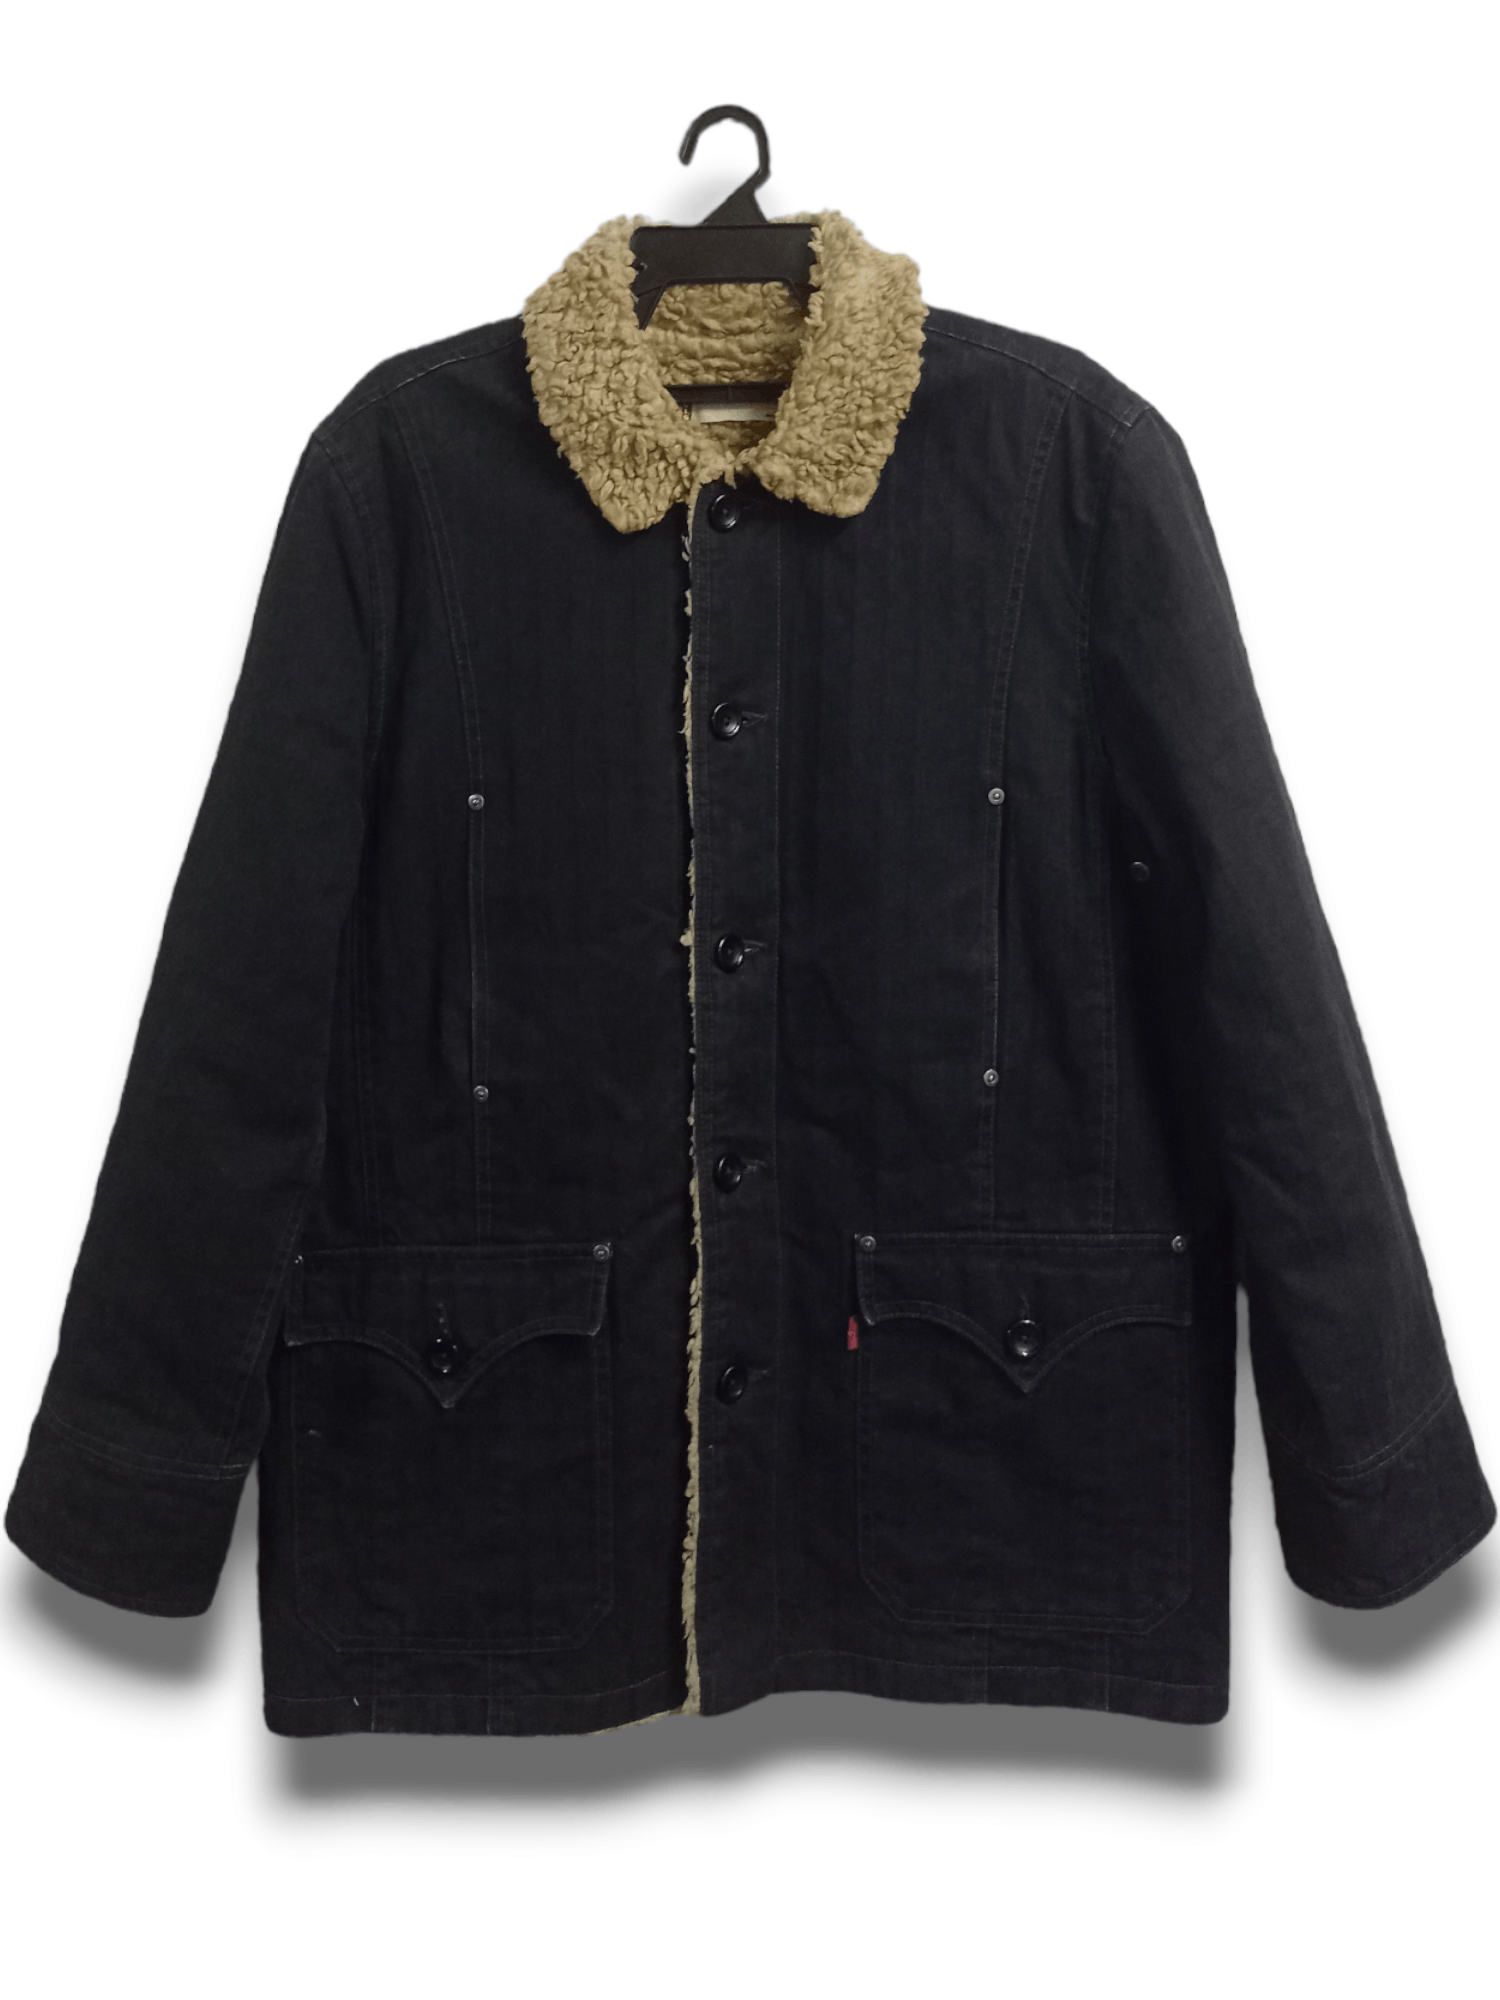 Vintage Vintage Levis Multi Pocket Denim Jacket Lined Sherpa | Grailed